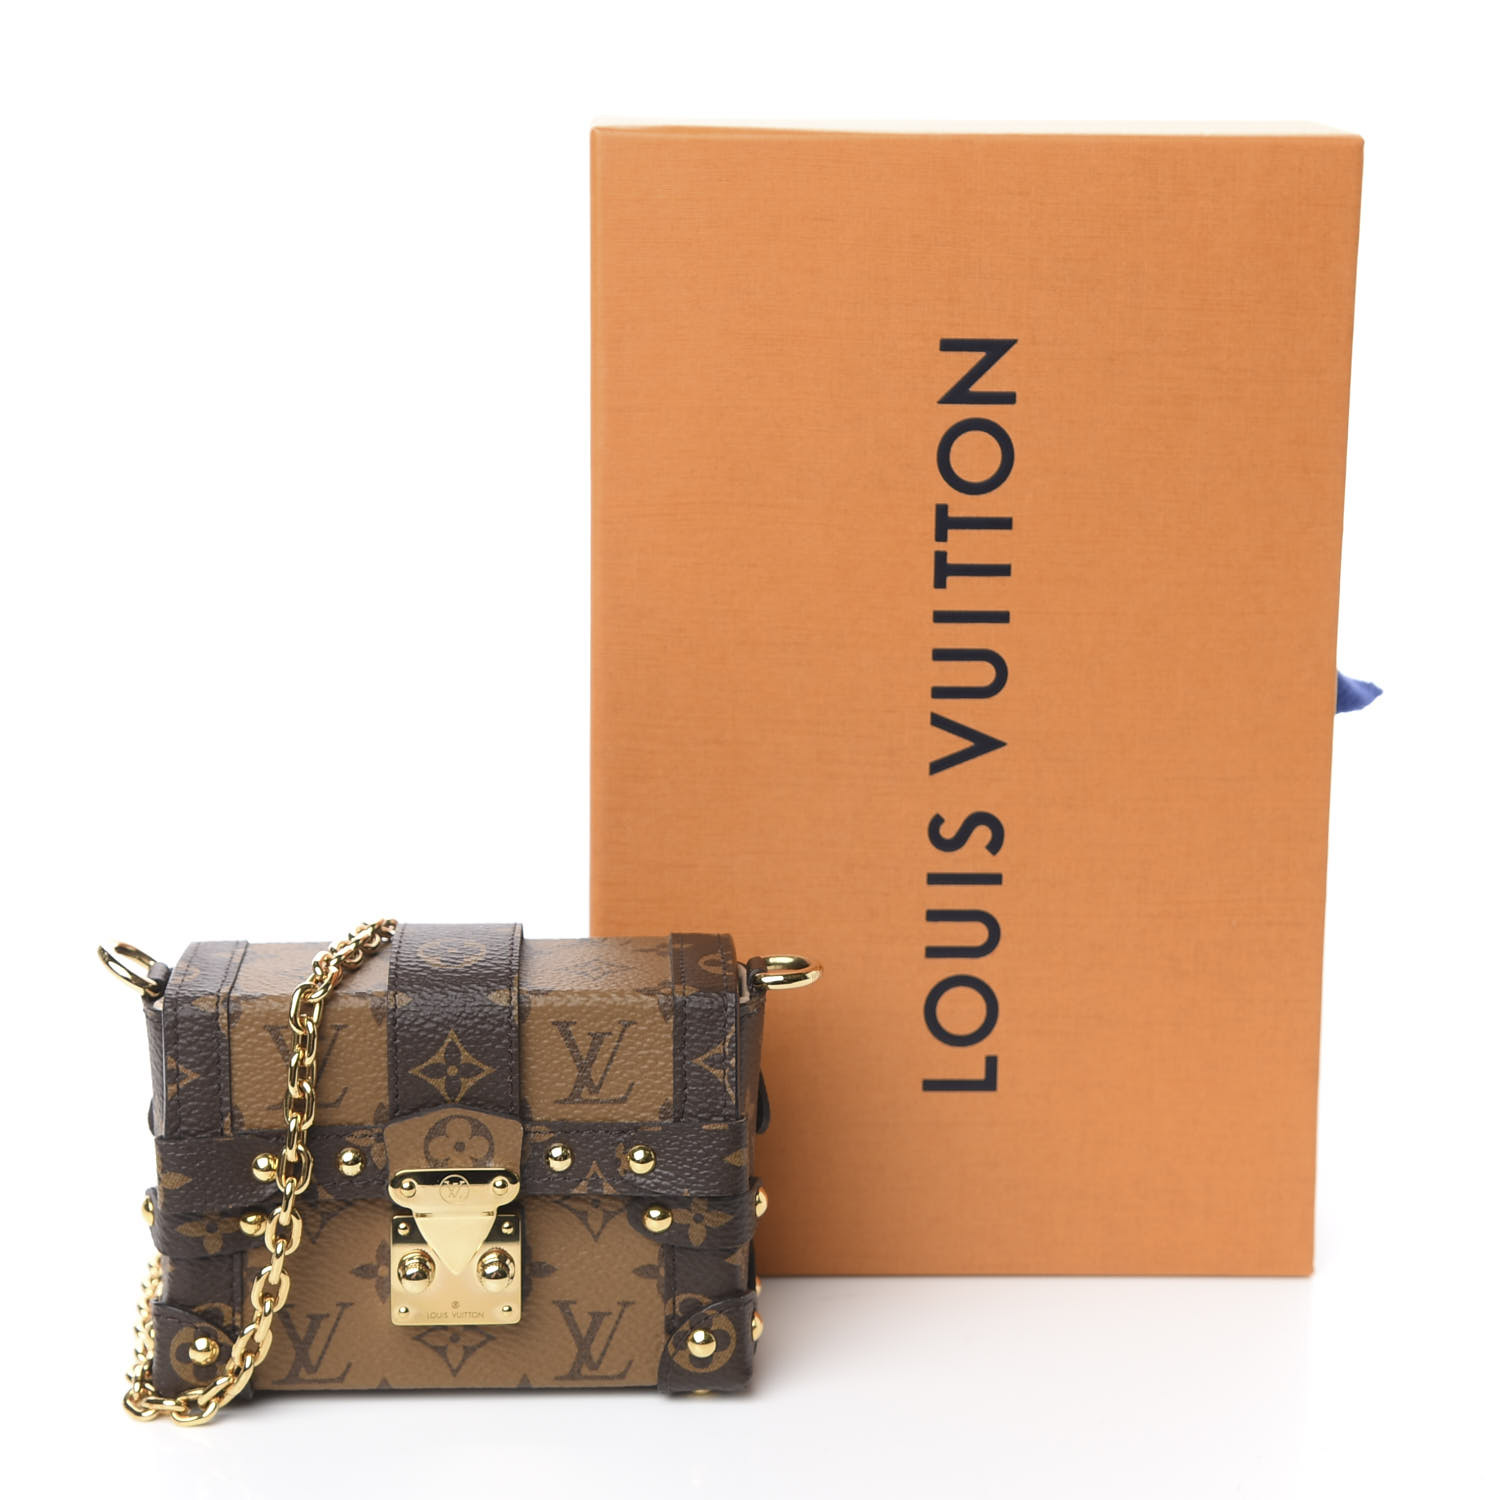 Louis Vuitton Mini ESSENTIAL TRUNK Unboxing